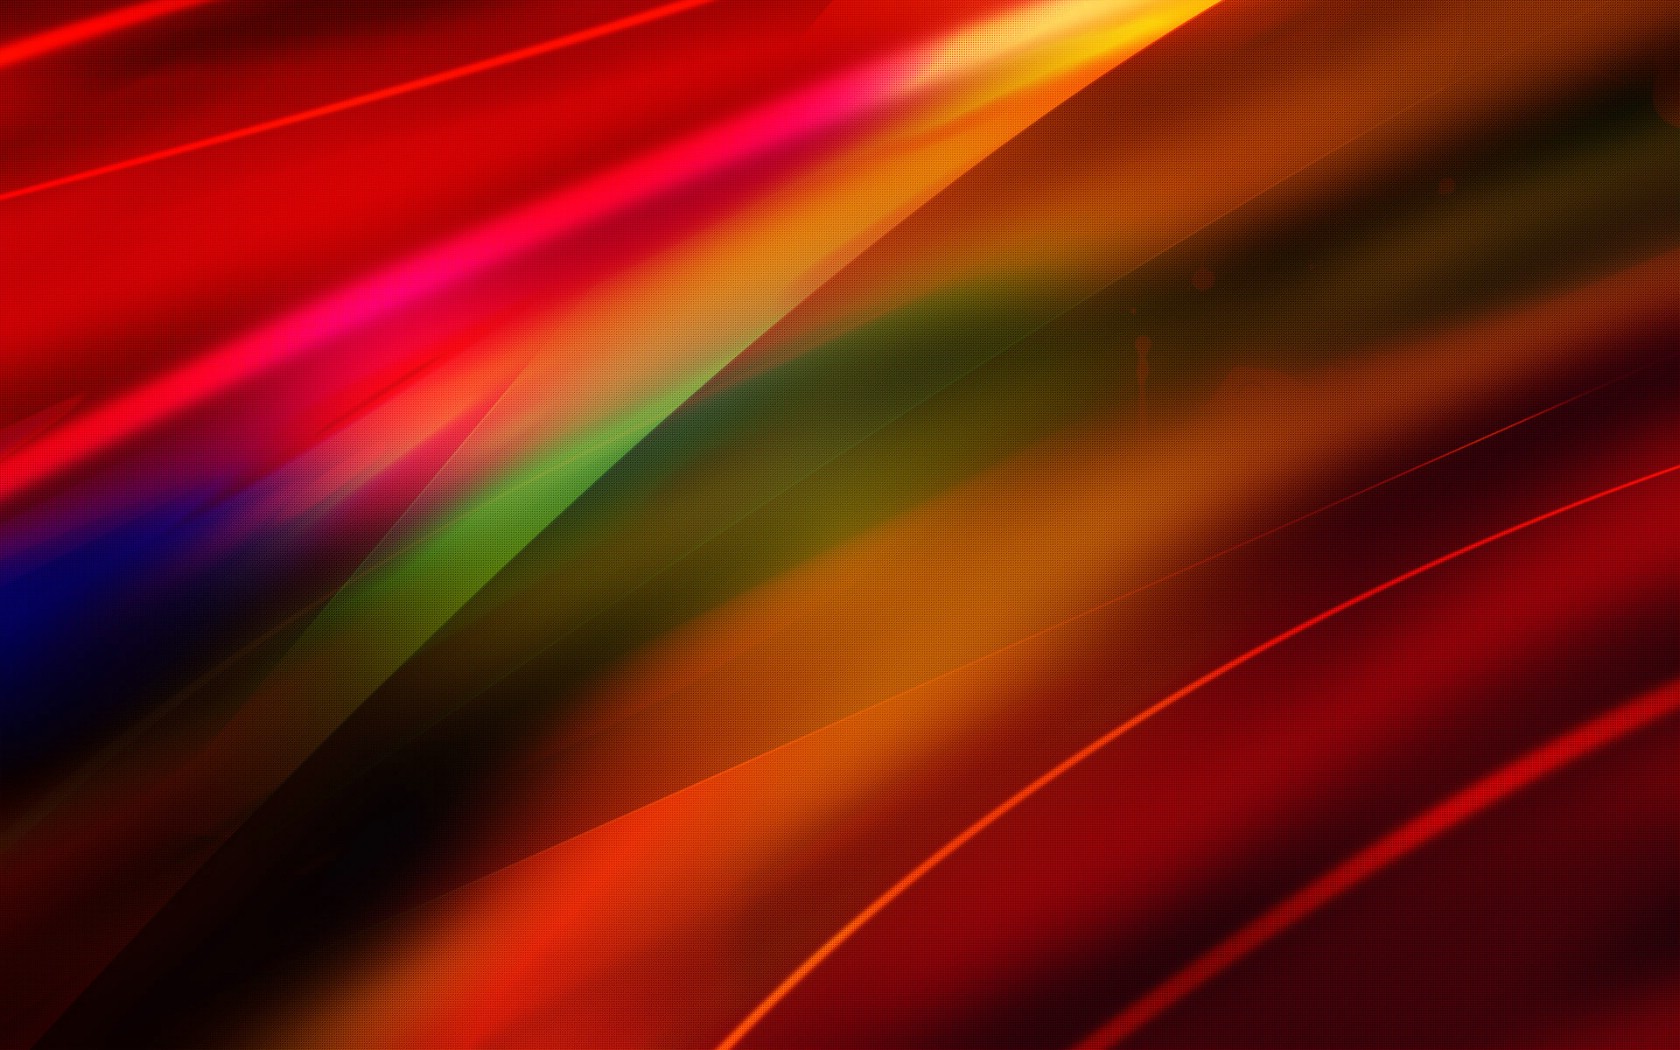 壁纸1680x1050抽象背景 彩虹之色 彩虹之色 抽象背景壁纸 抽象背景 彩虹之色壁纸 抽象背景 彩虹之色图片 抽象背景 彩虹之色素材 插画壁纸 插画图库 插画图片素材桌面壁纸